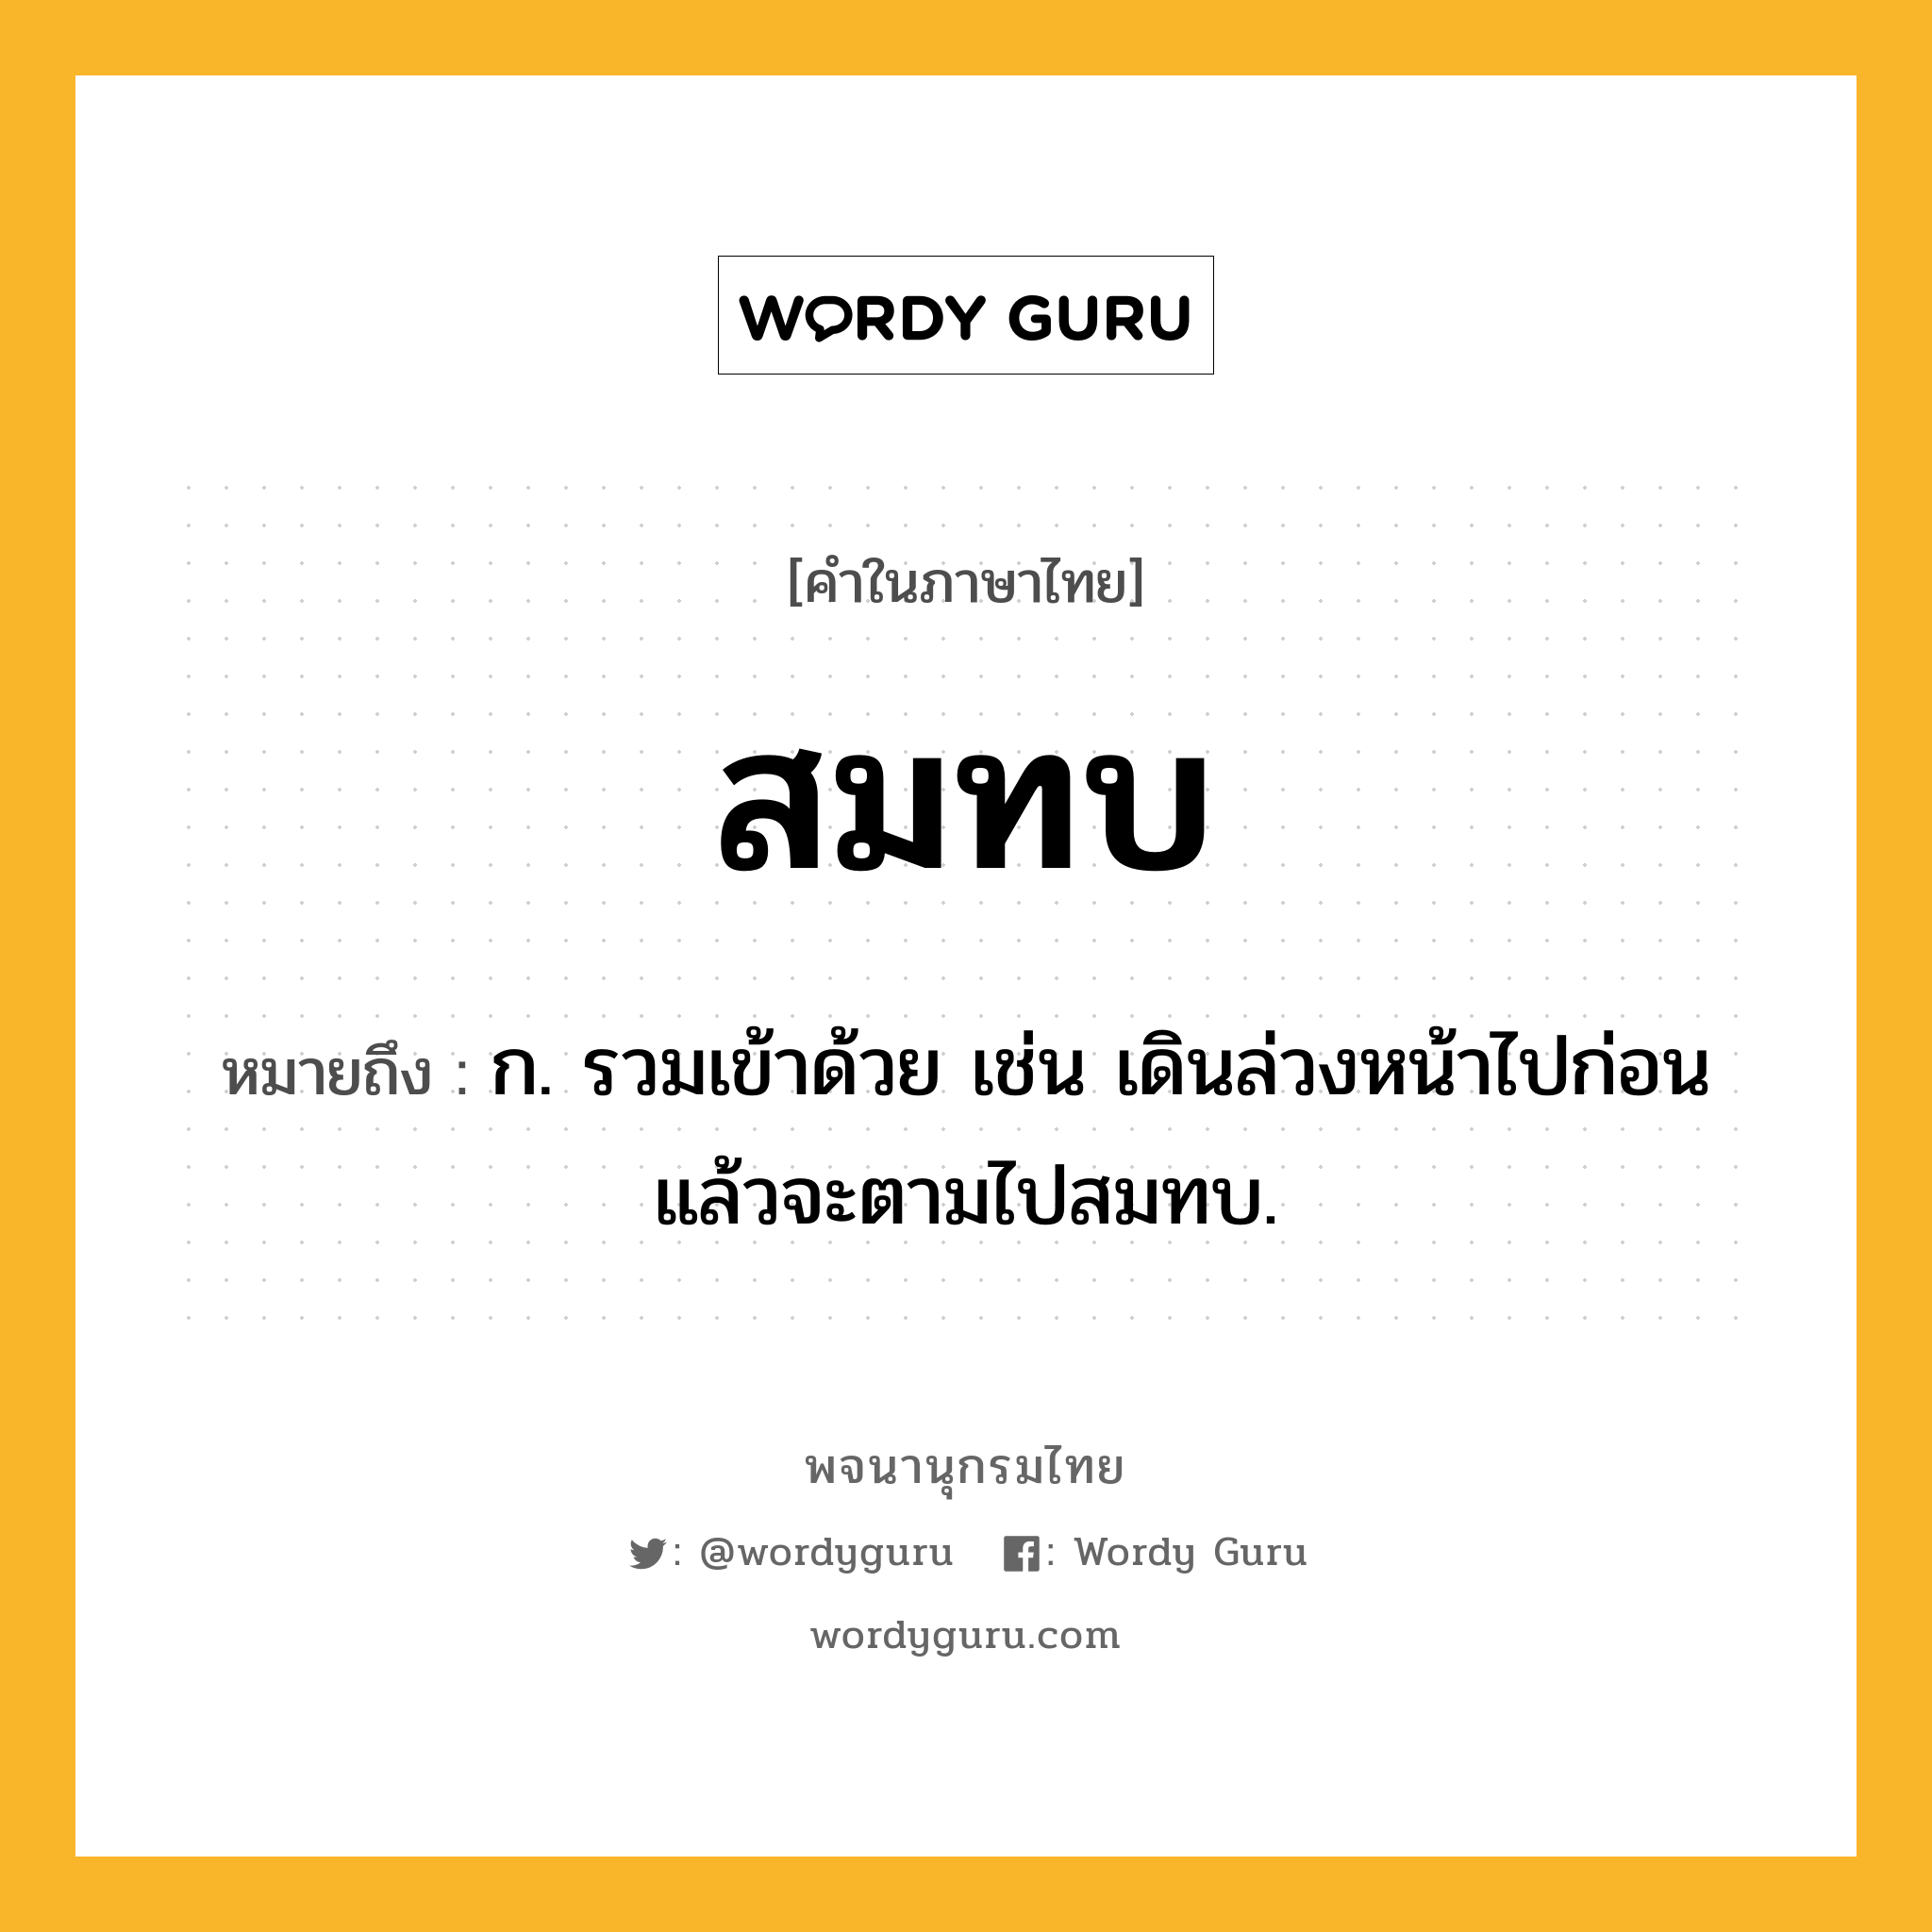 สมทบ หมายถึงอะไร?, คำในภาษาไทย สมทบ หมายถึง ก. รวมเข้าด้วย เช่น เดินล่วงหน้าไปก่อนแล้วจะตามไปสมทบ.